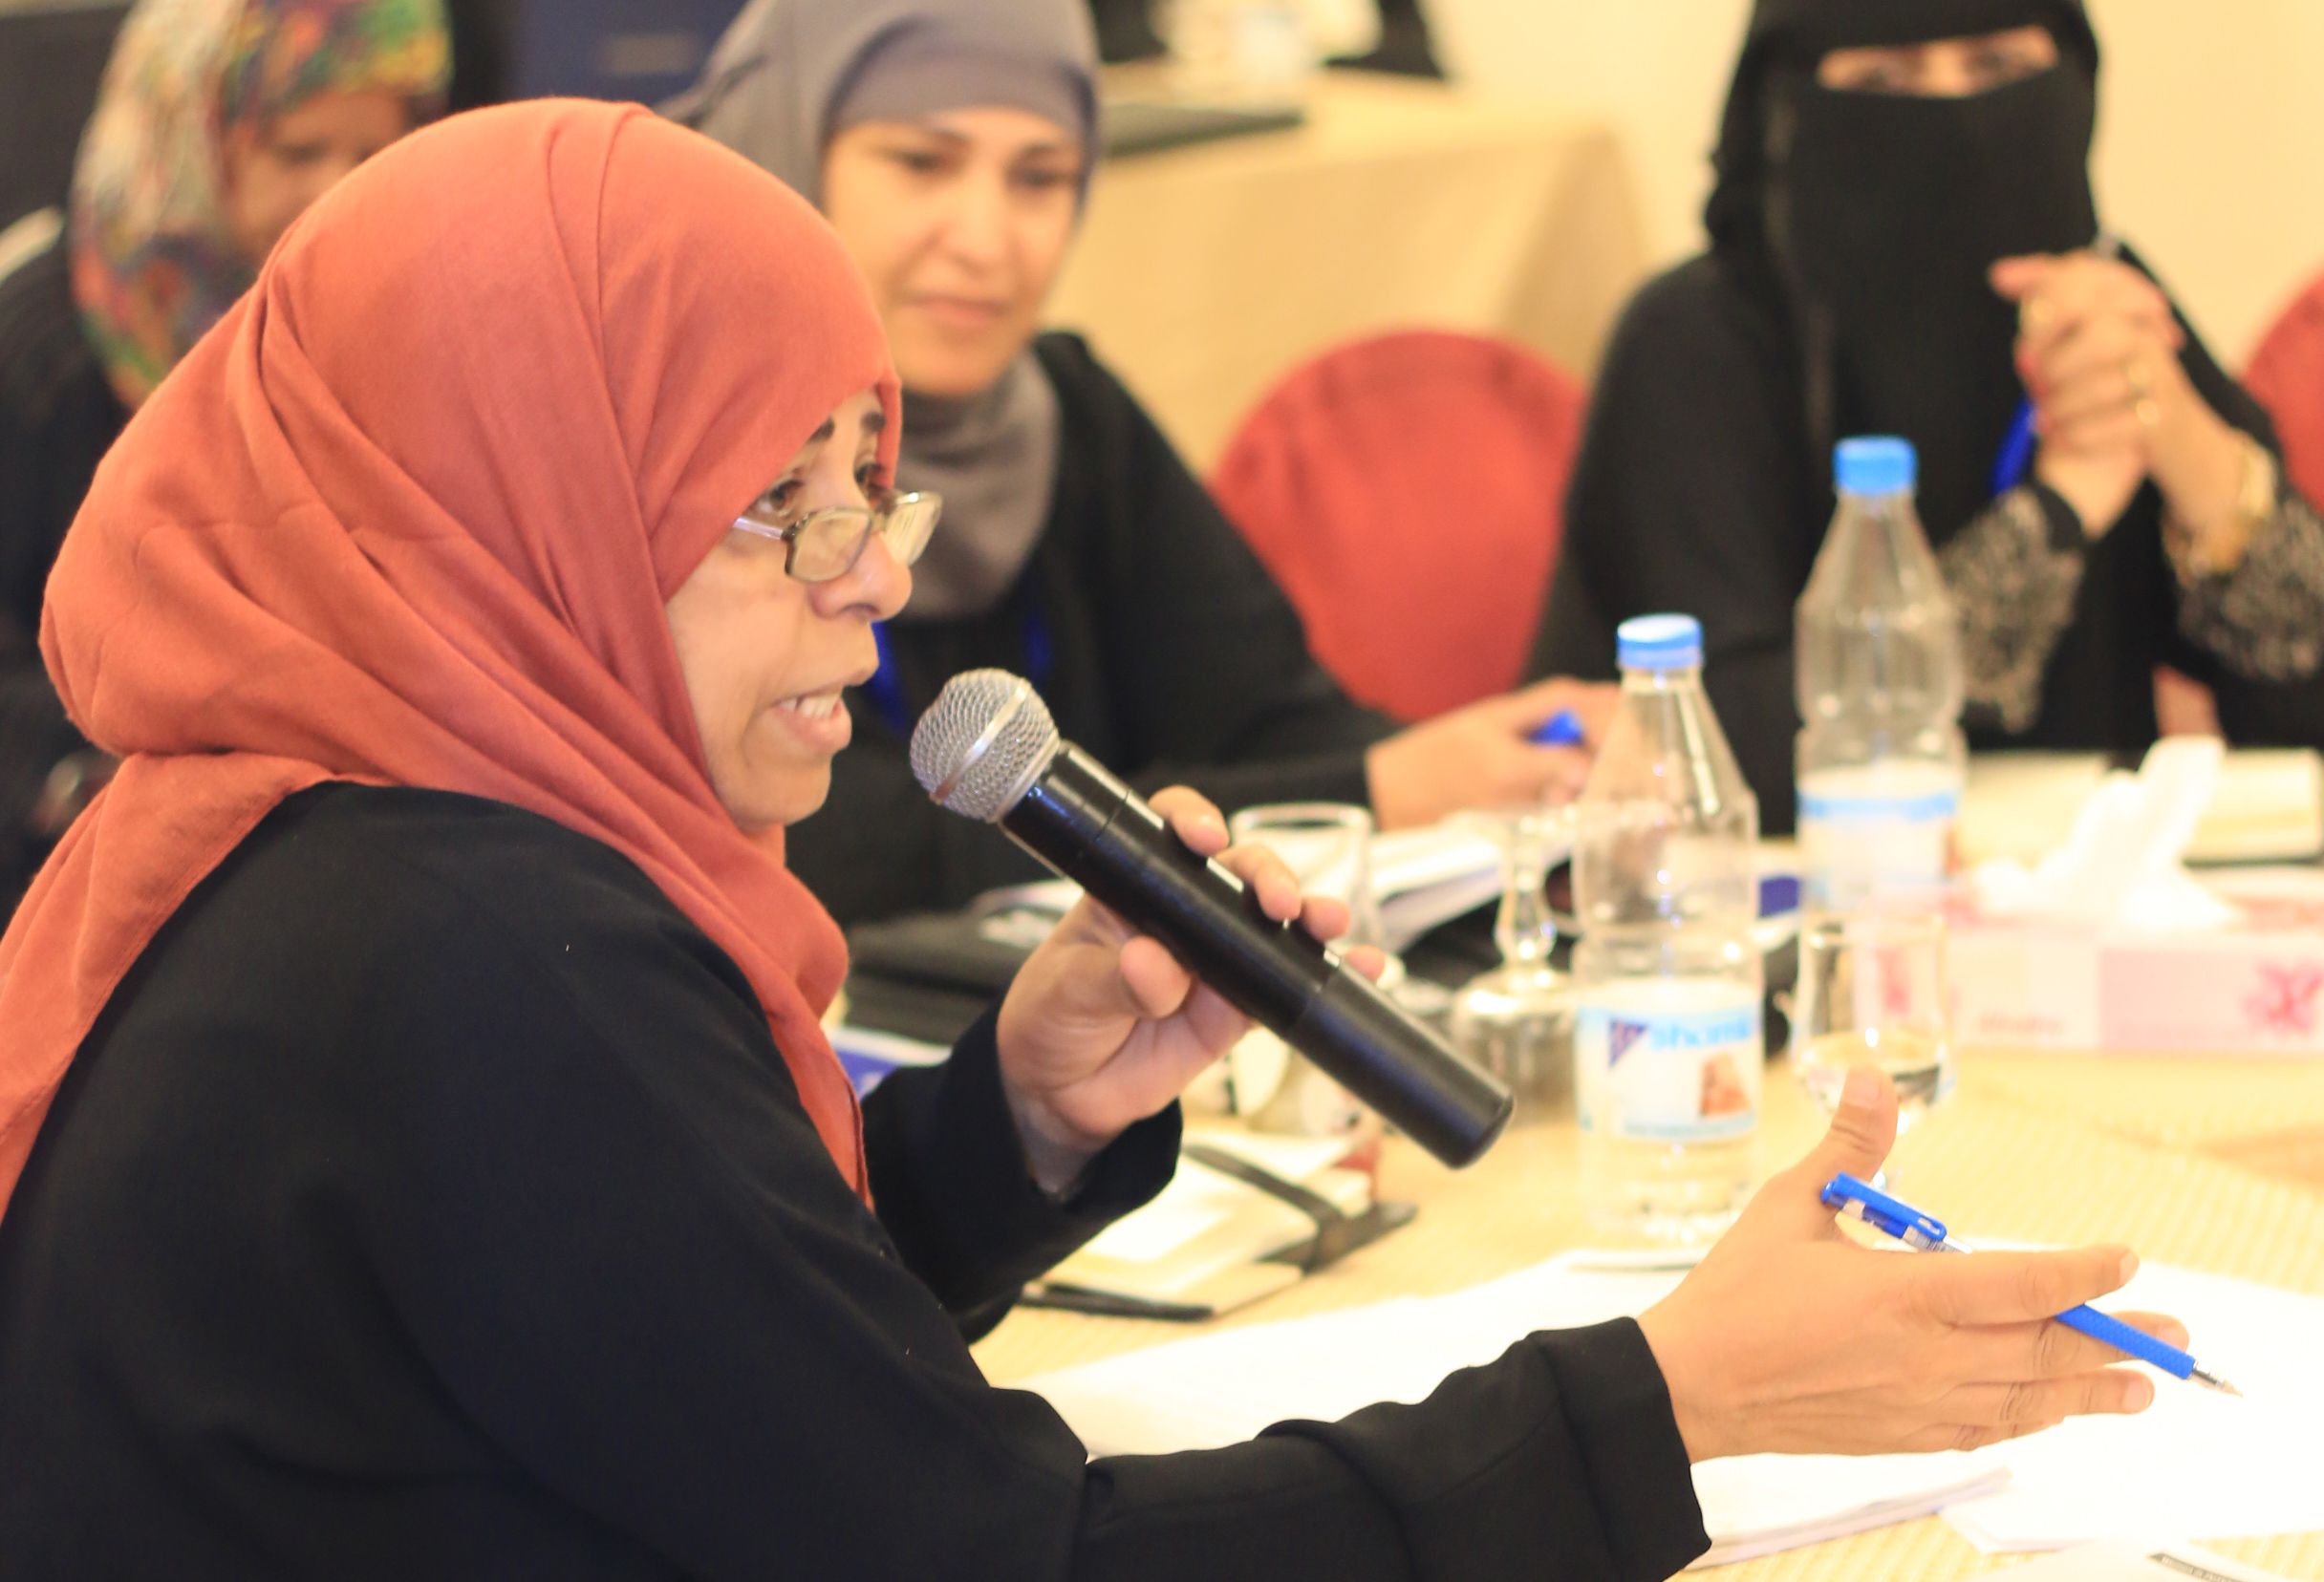 المنظمات النسائية اليمنية تتعلم وتتشارك الخبرات مع أقرانها في المنطقة | هيئة الأمم المتحدة للمرأة – الدول العربية